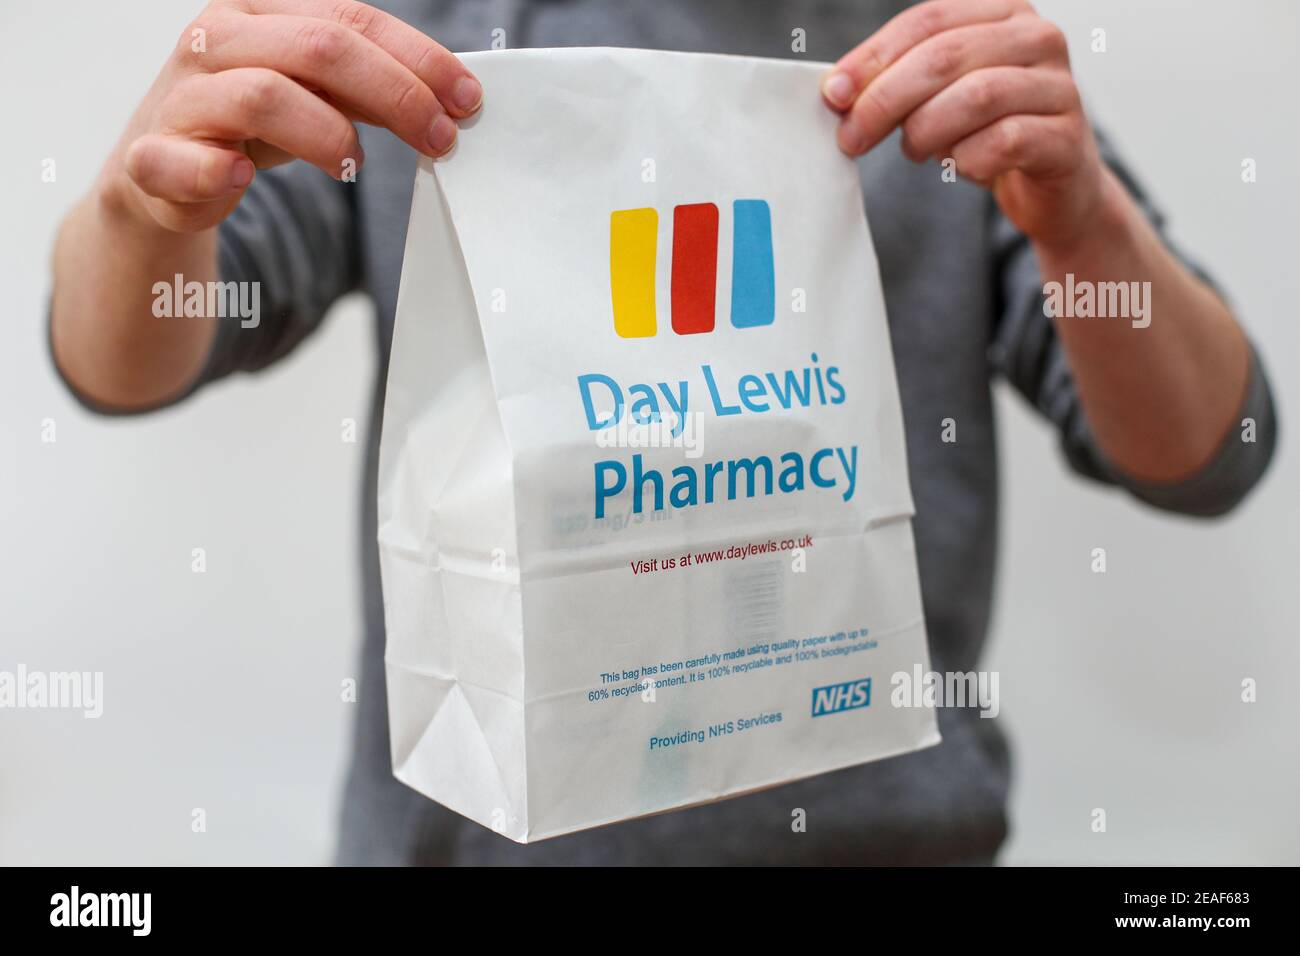 Un hombre que entrega una receta de NHS de la farmacia Day Lewis. Foto de stock